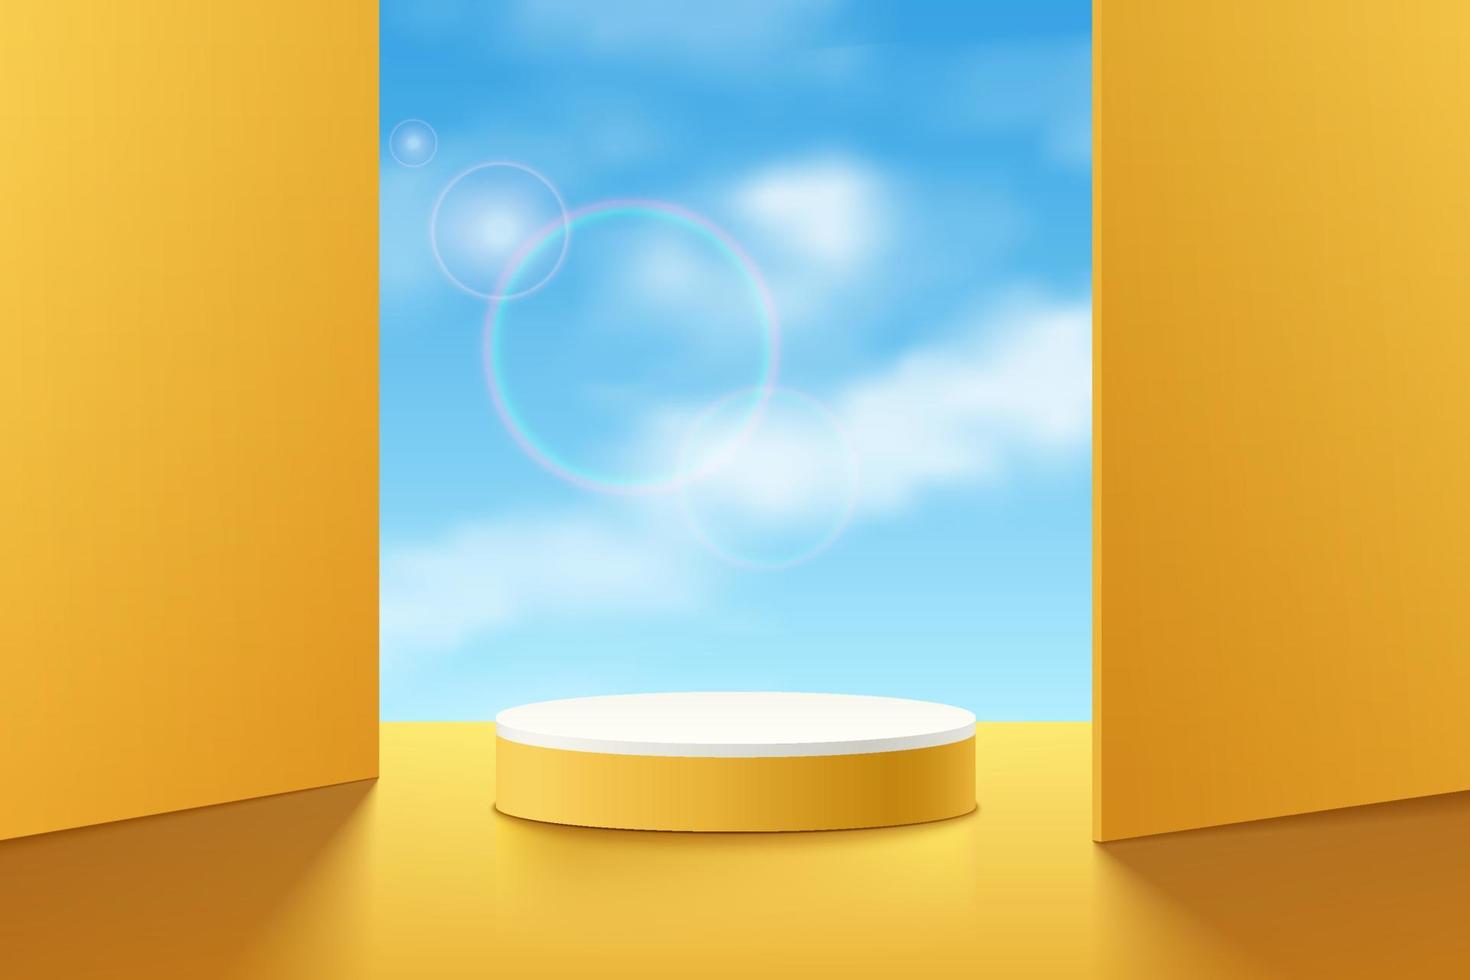 pódio de pedestal de cilindro 3d amarelo realista com céu azul de nuvens em pano de fundo de praças. cena mínima para vitrine de produtos, exibição de promoção. projeto da plataforma geométrica do quarto do estúdio abstrato do vetor. vetor